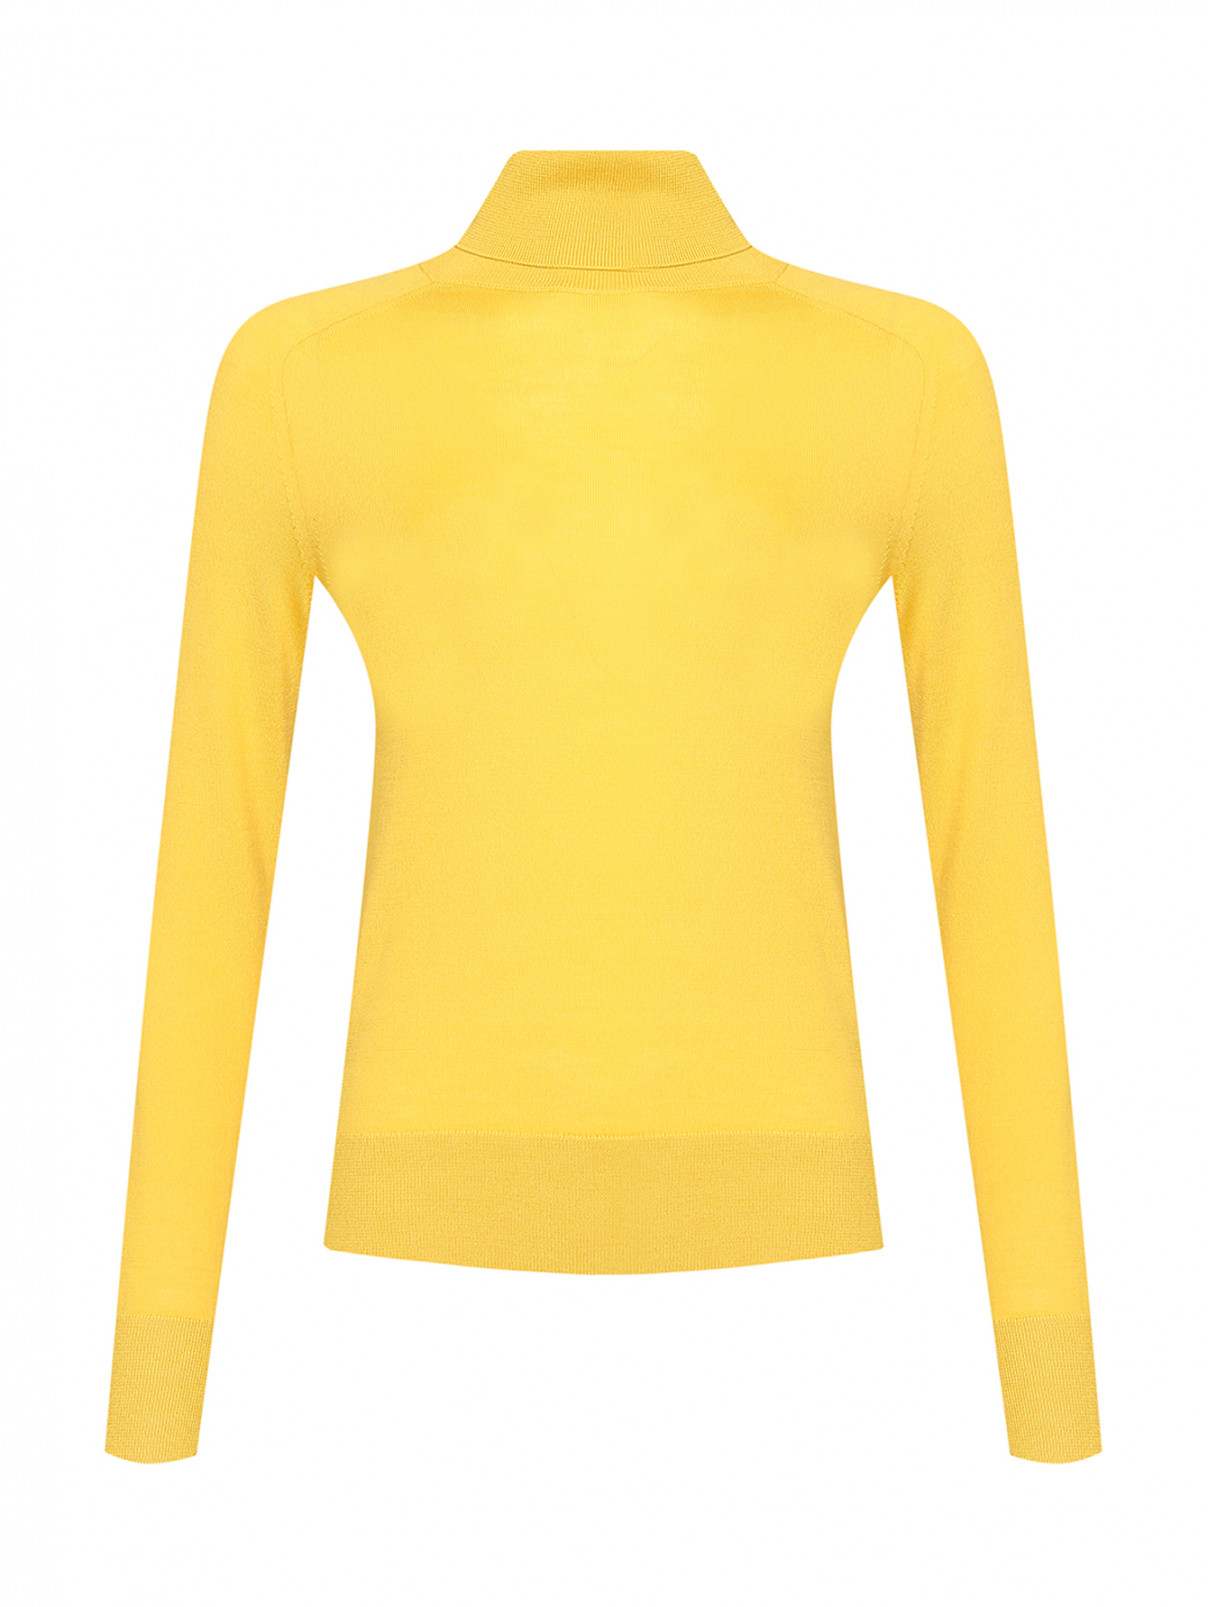 Однотонная водолазка из шерсти Ermanno Scervino  –  Общий вид  – Цвет:  Желтый